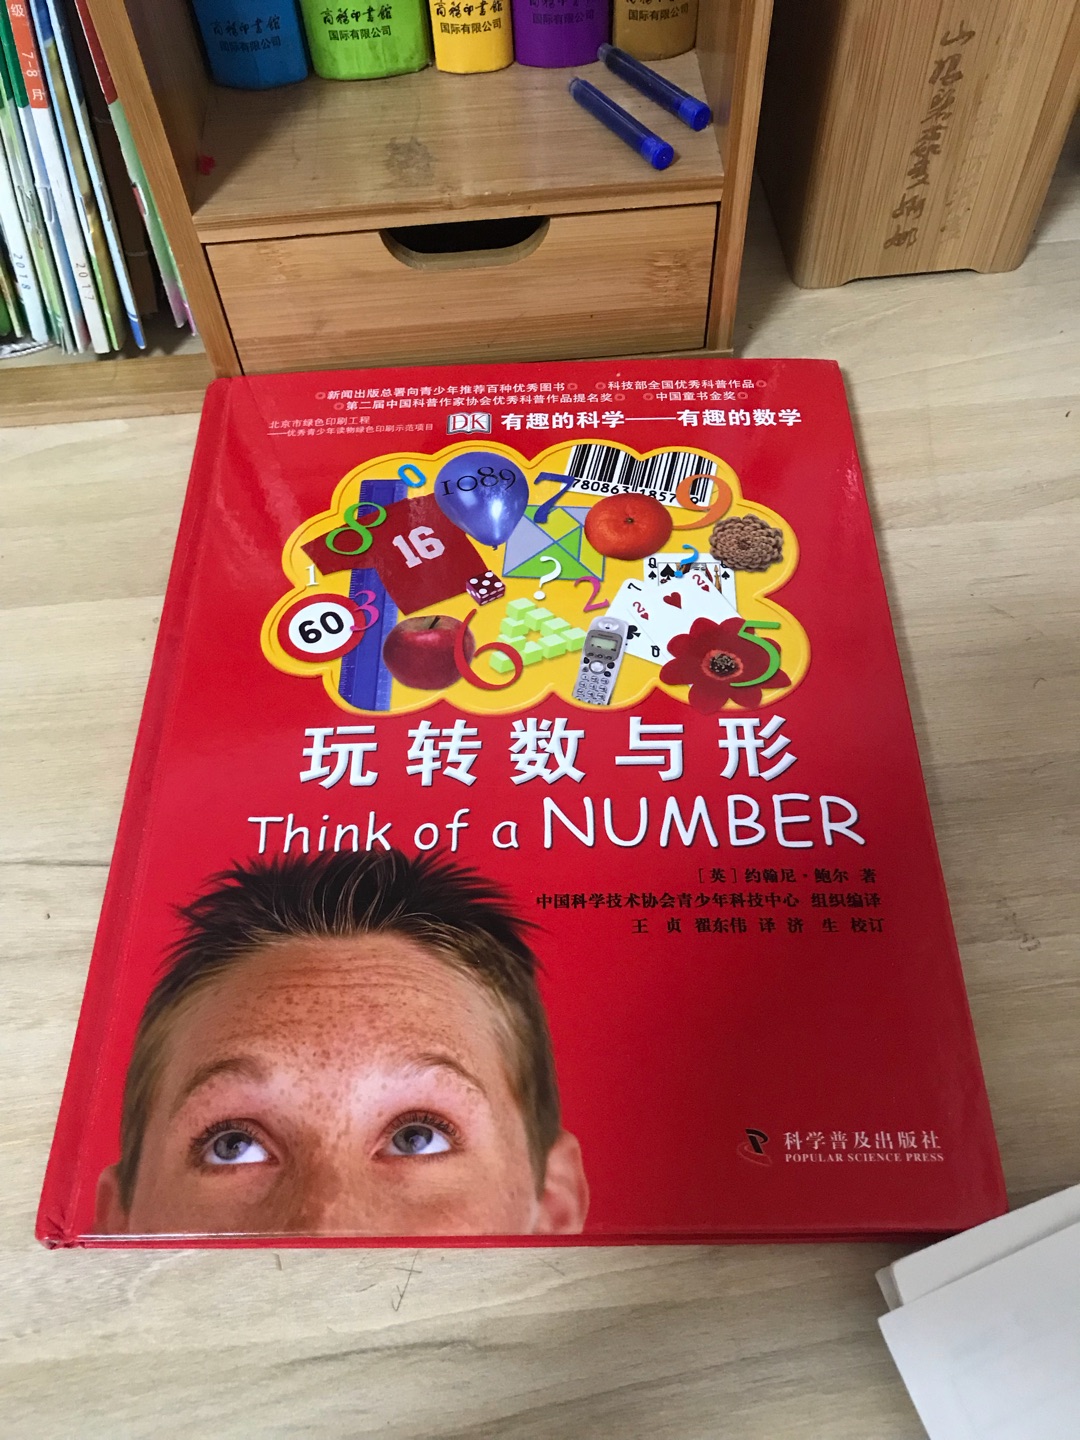 儿子一直很喜欢数学，各种趣味数学书都特别着迷，所以给他买了不少这样的书，这本书很棒，精装版的，内容很精彩，印刷也比较精美，一拿到书，孩子就爱不释手了！赞一个！